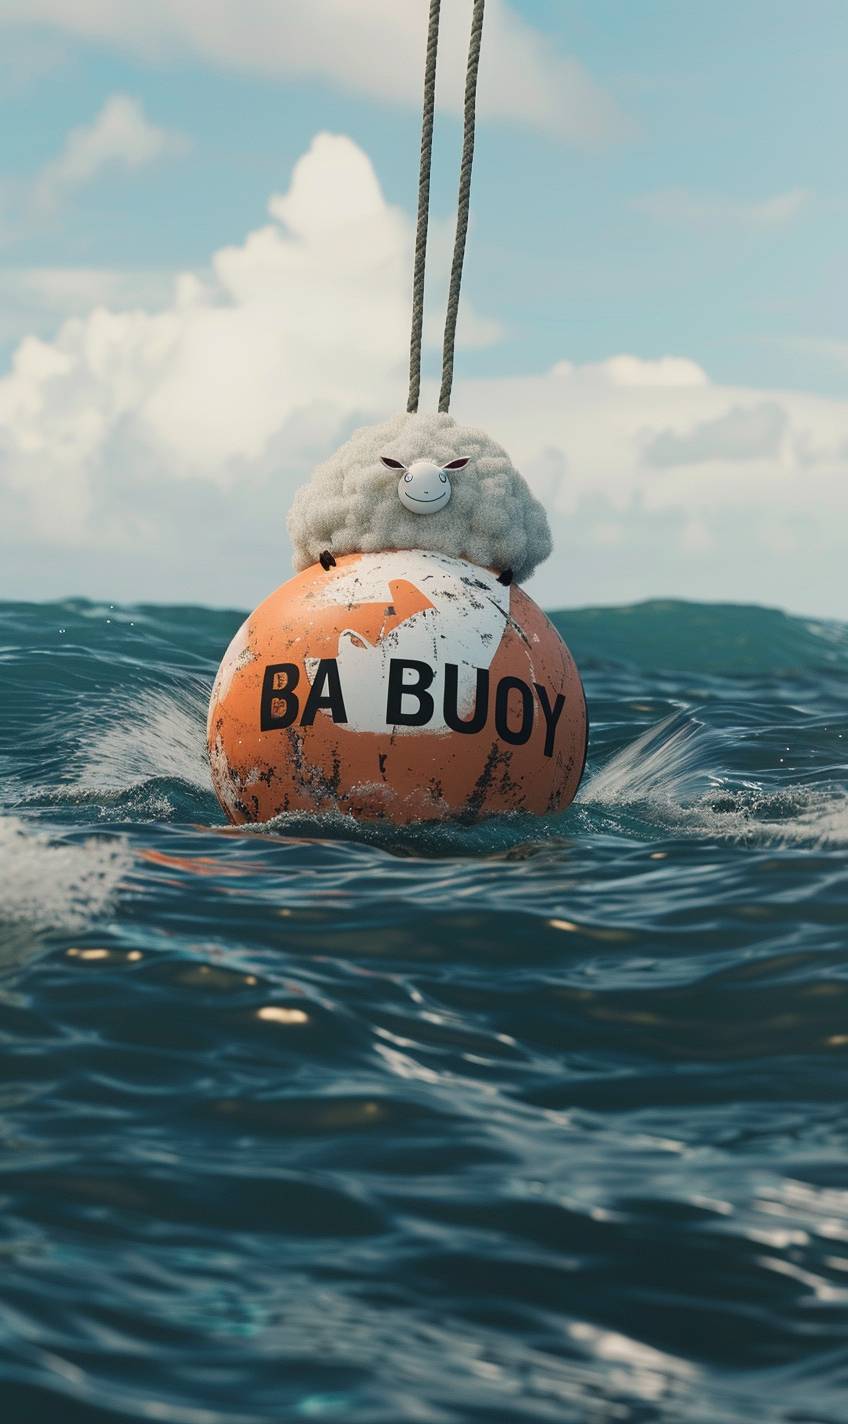 Pixar映画のポスターであり，海の中で羊のように見えるブイが描かれた「BA BA BUOY」というタイトルのテキストが表示されます --ar 3:5 --v 6.0